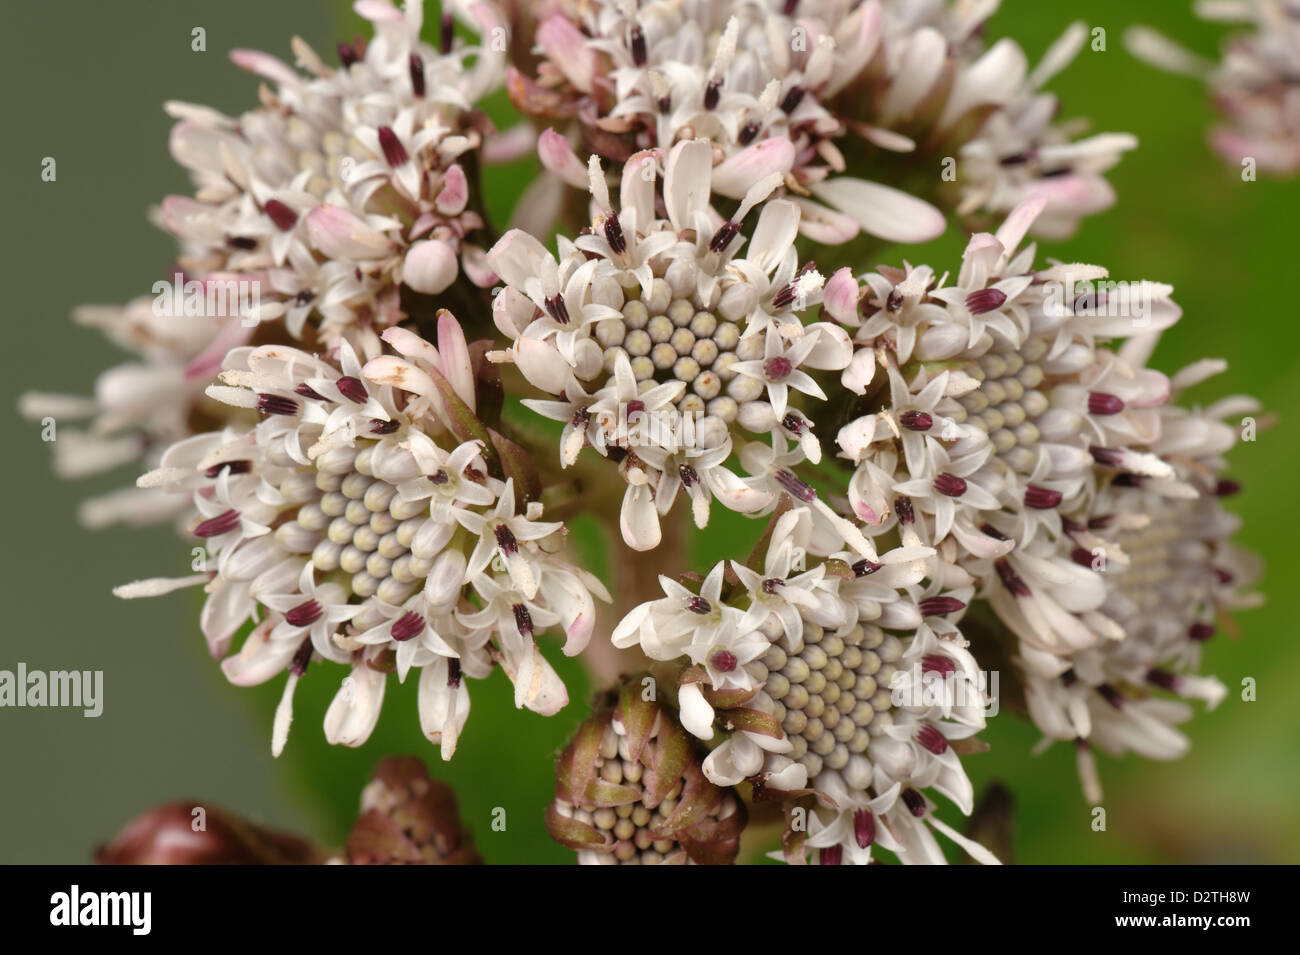 Blume des gemeinsamen Pestwurz, Petasites Hybridus, einem frühen zusammengesetzte Blütenpflanze Stockfoto